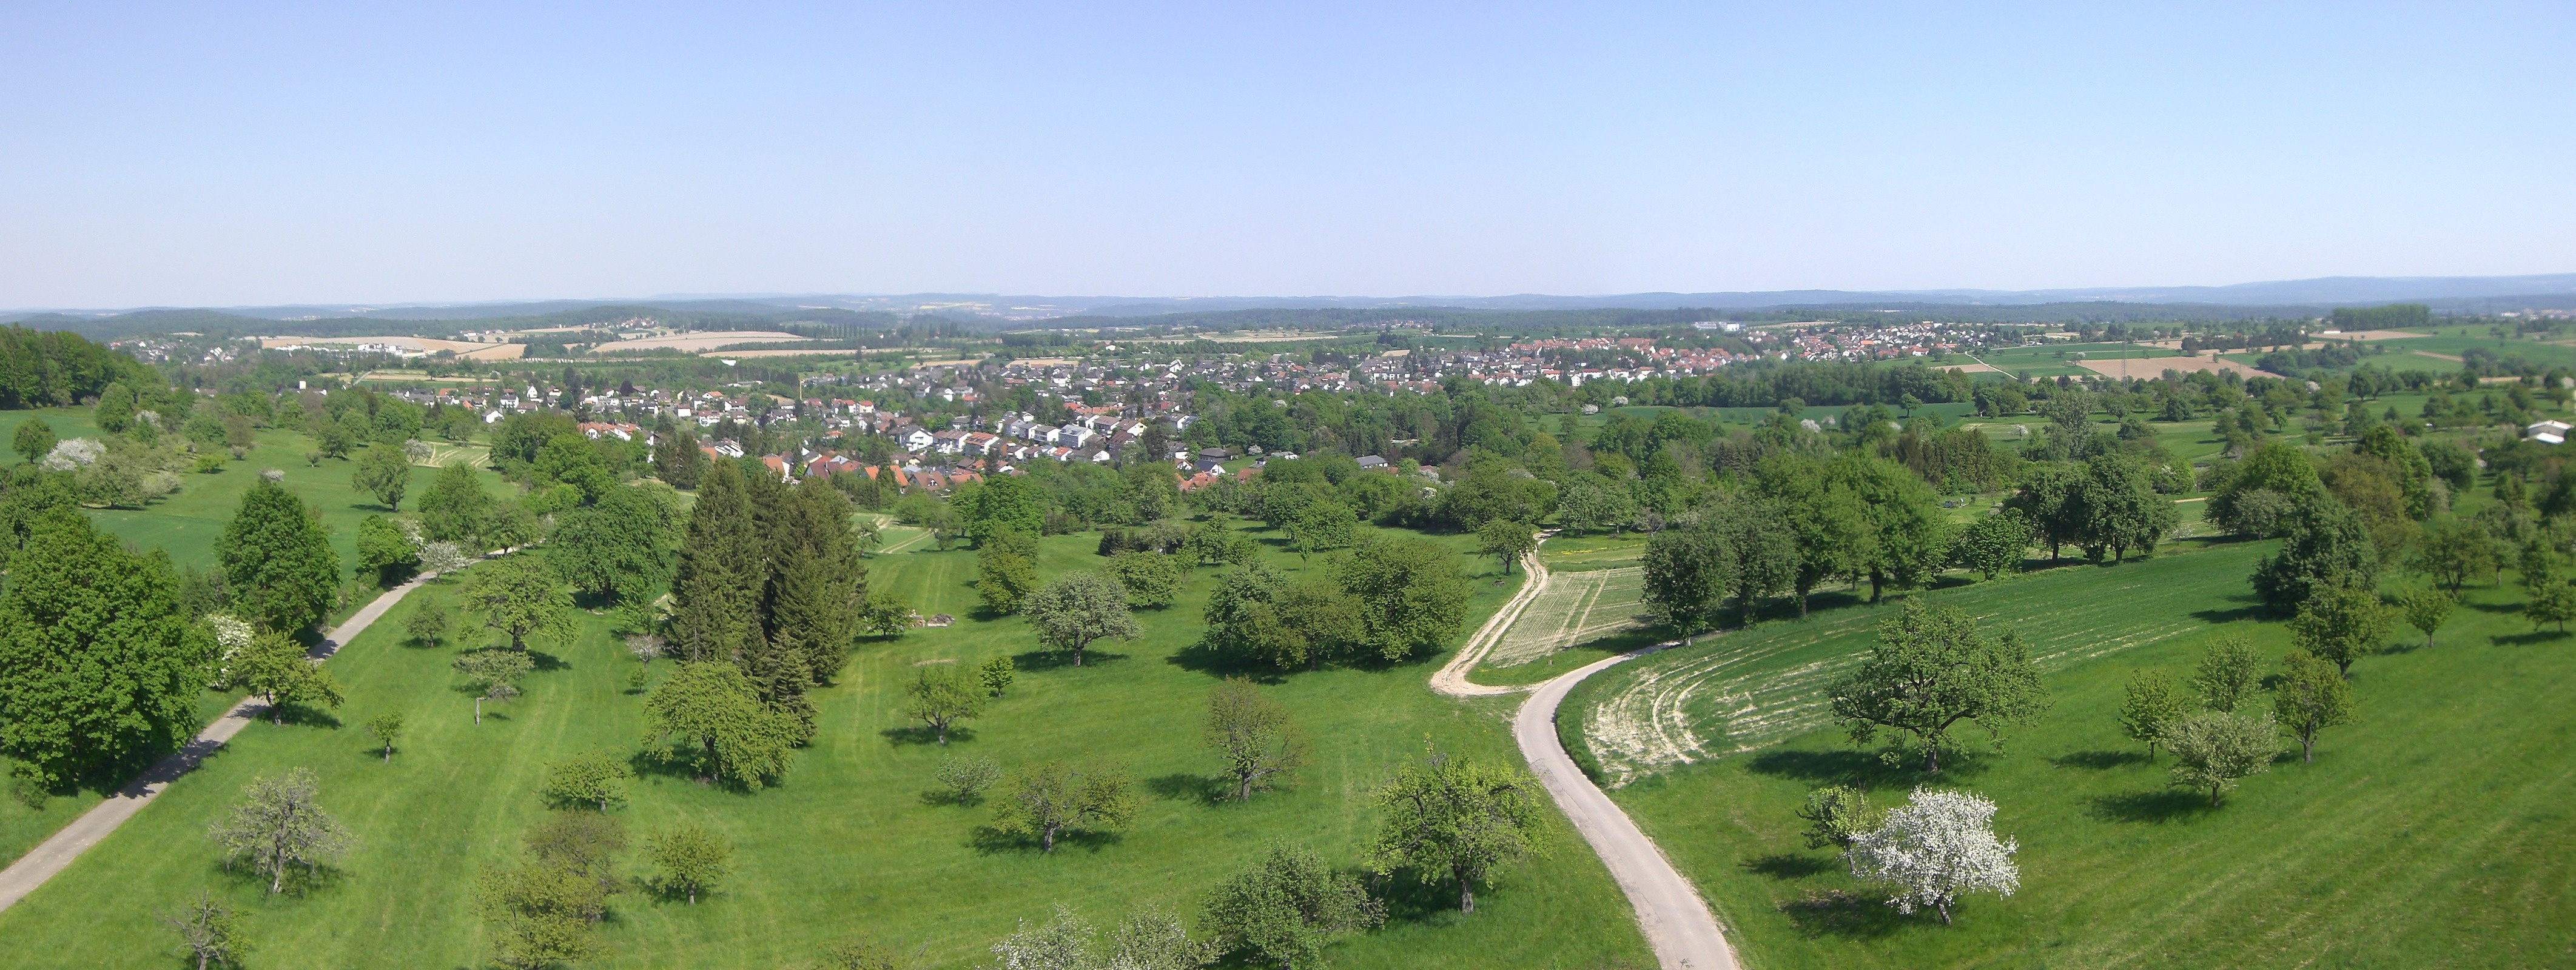 Blick vom Fernmeldeturm Grünwettersbach